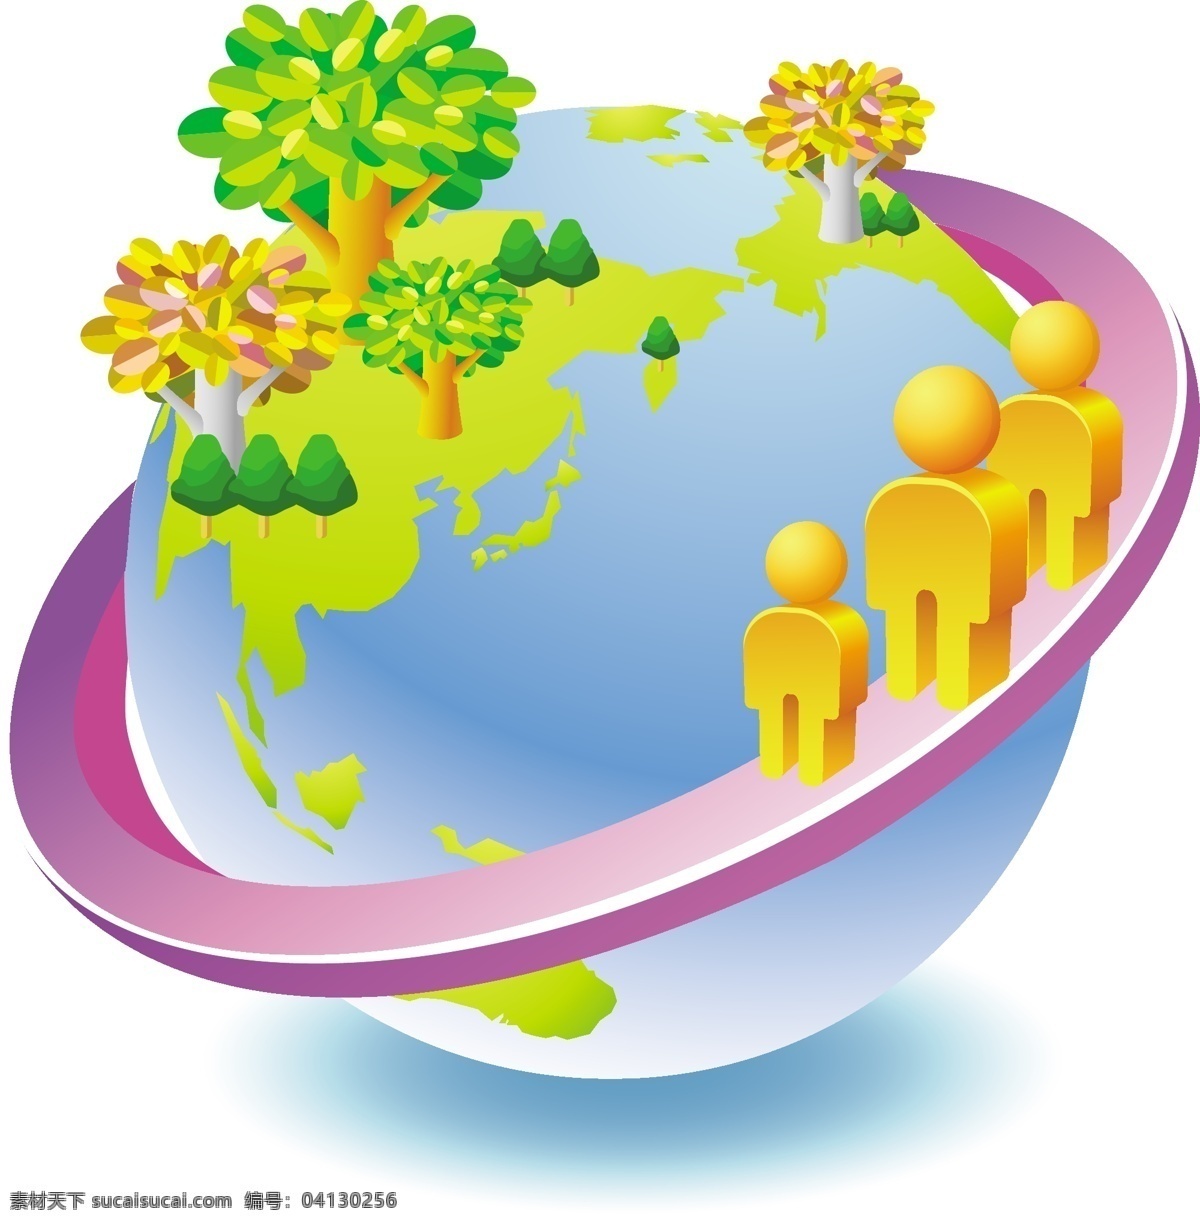 矢量 绿色 地球 环境保护 房子 环保 绿色地球 绿叶 矢量素材 树木 树叶 水滴 太阳